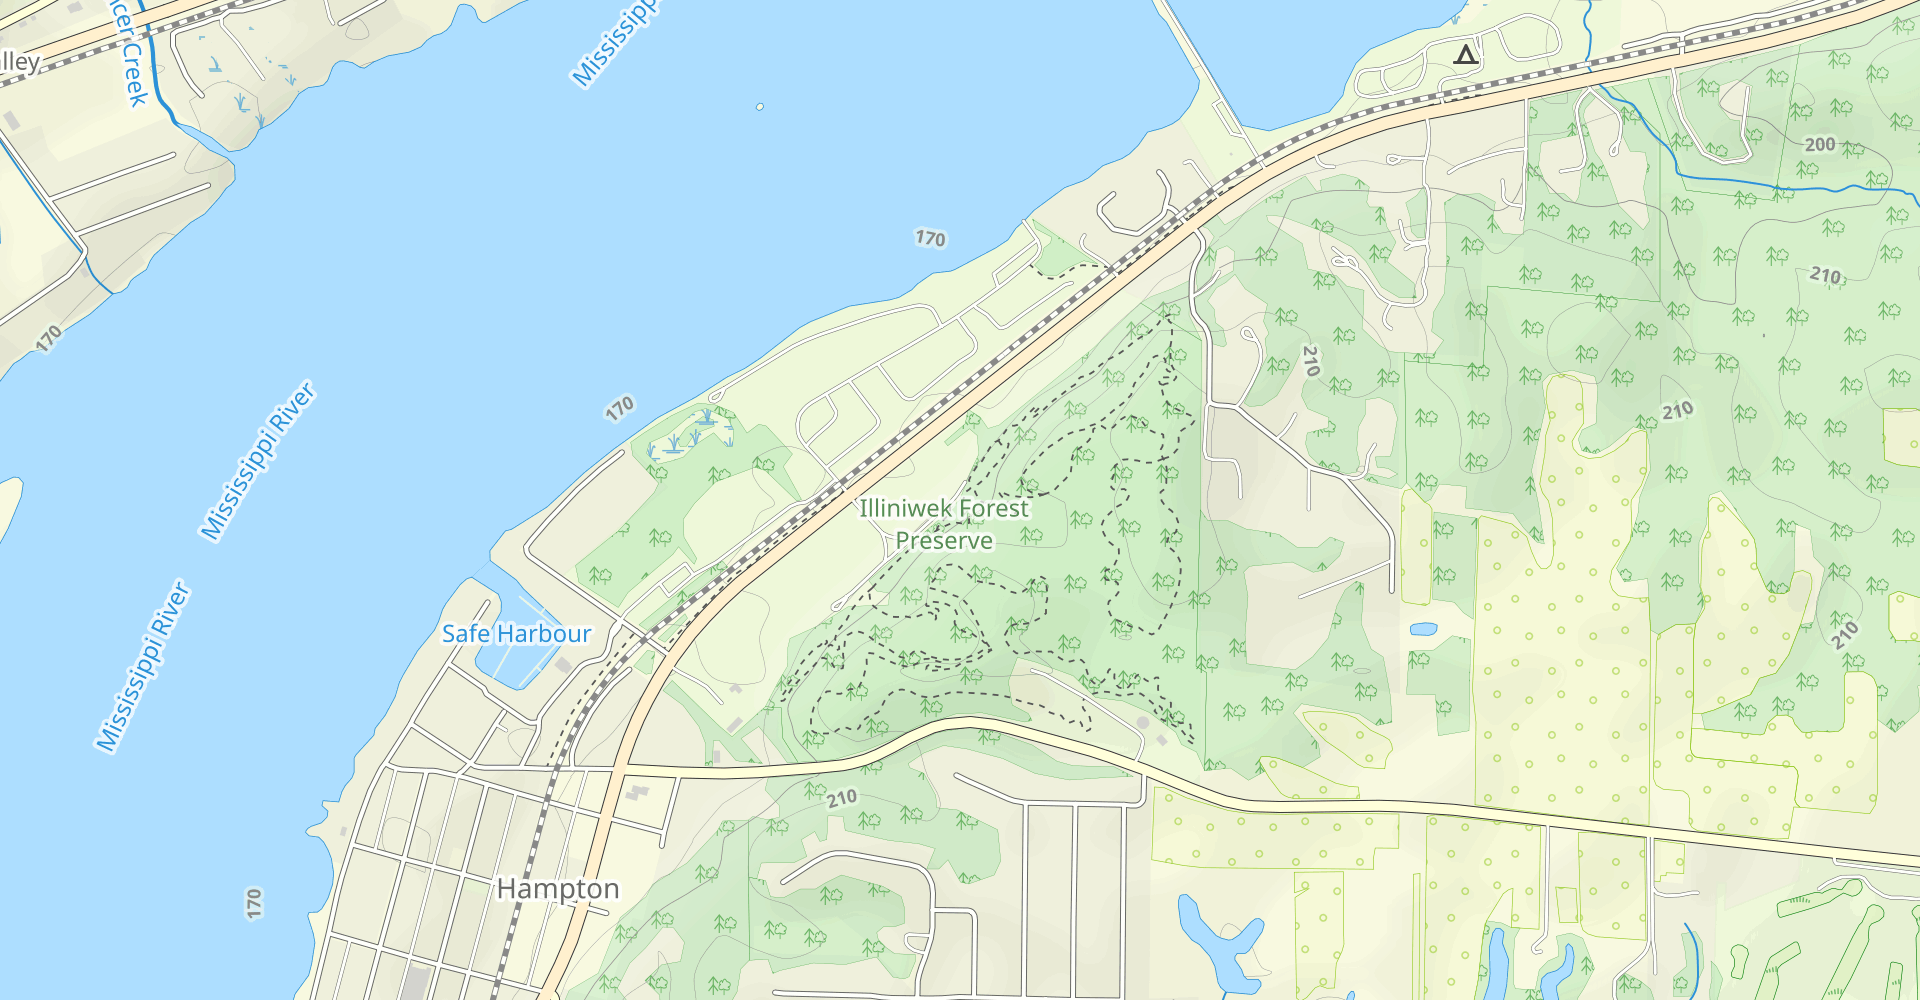 North Loop and Upper South Loop